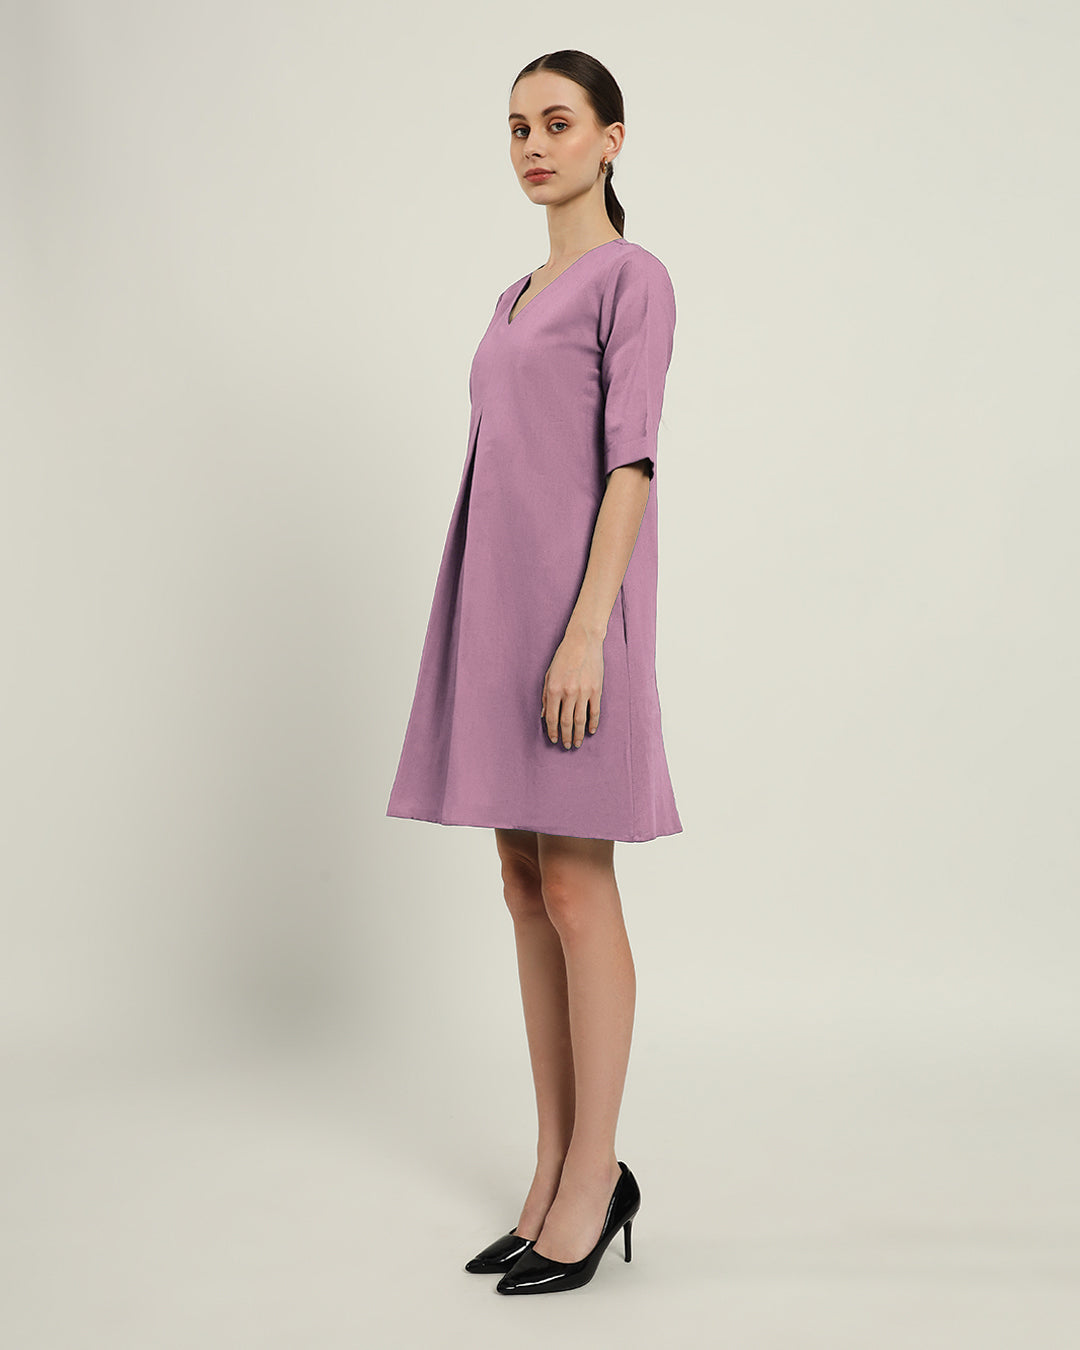 The Giza Purple Swirl Cotton Dress